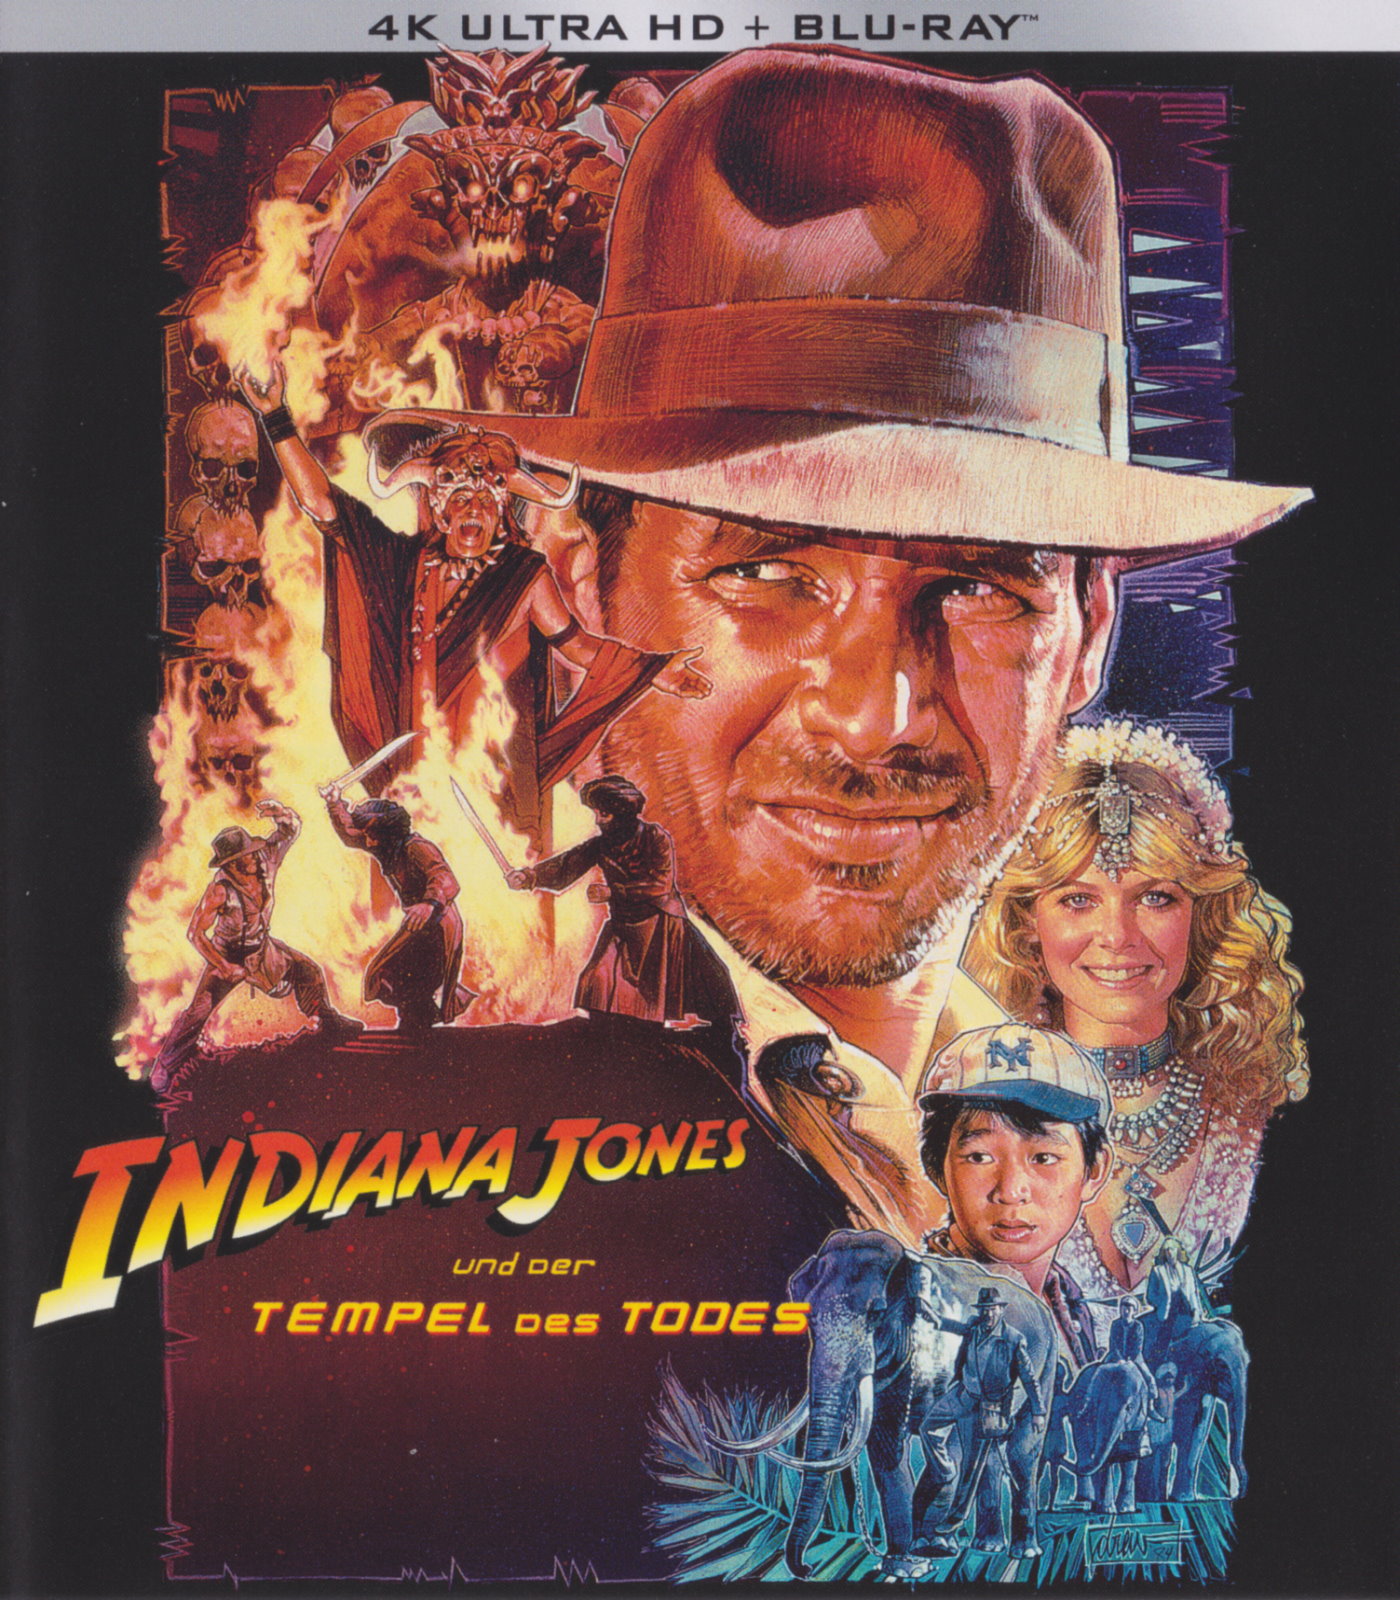 Cover - Indiana Jones und der Tempel des Todes.jpg